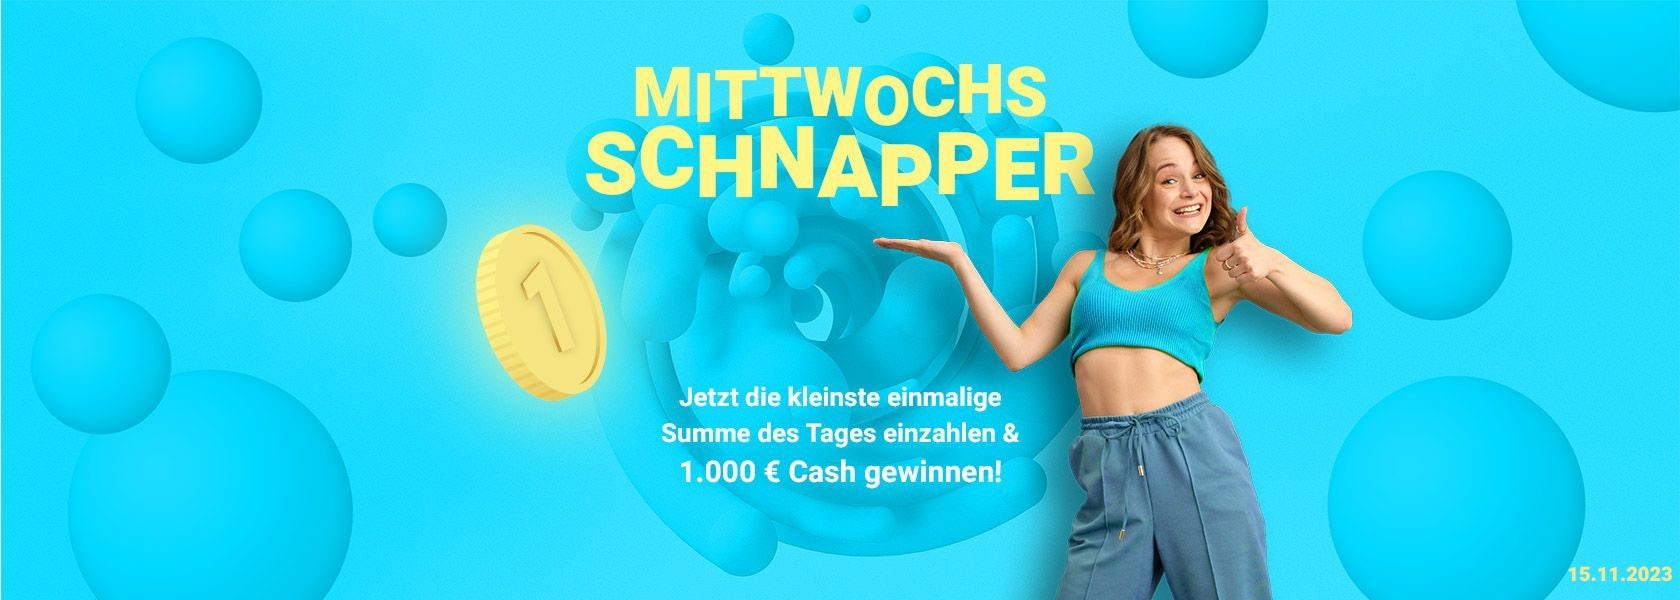 mittwochs-schnapper-bbo-151123